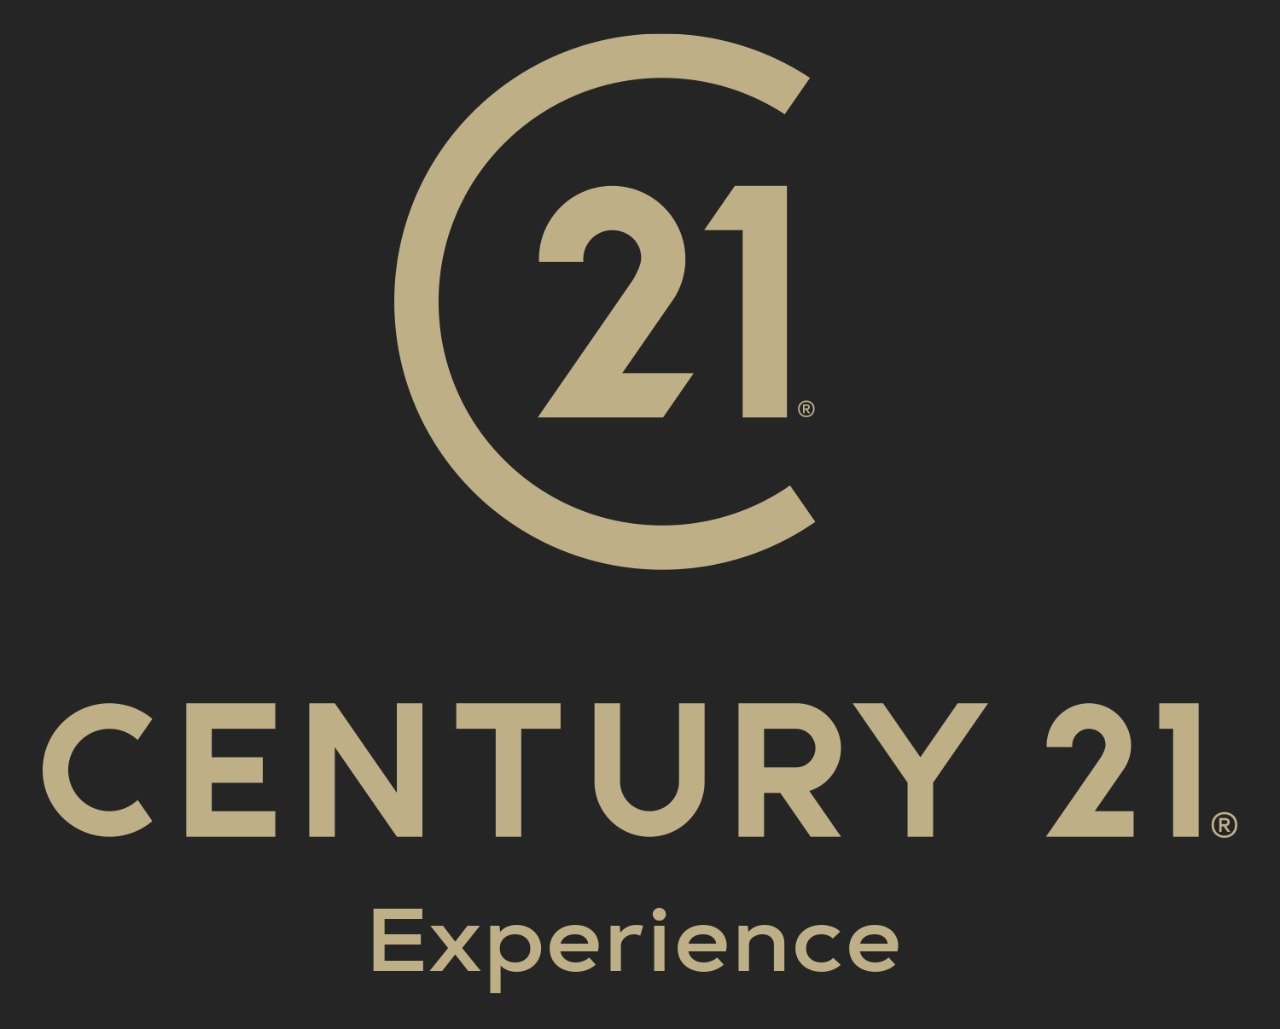 Raul Aponte - Century 21 Experience 